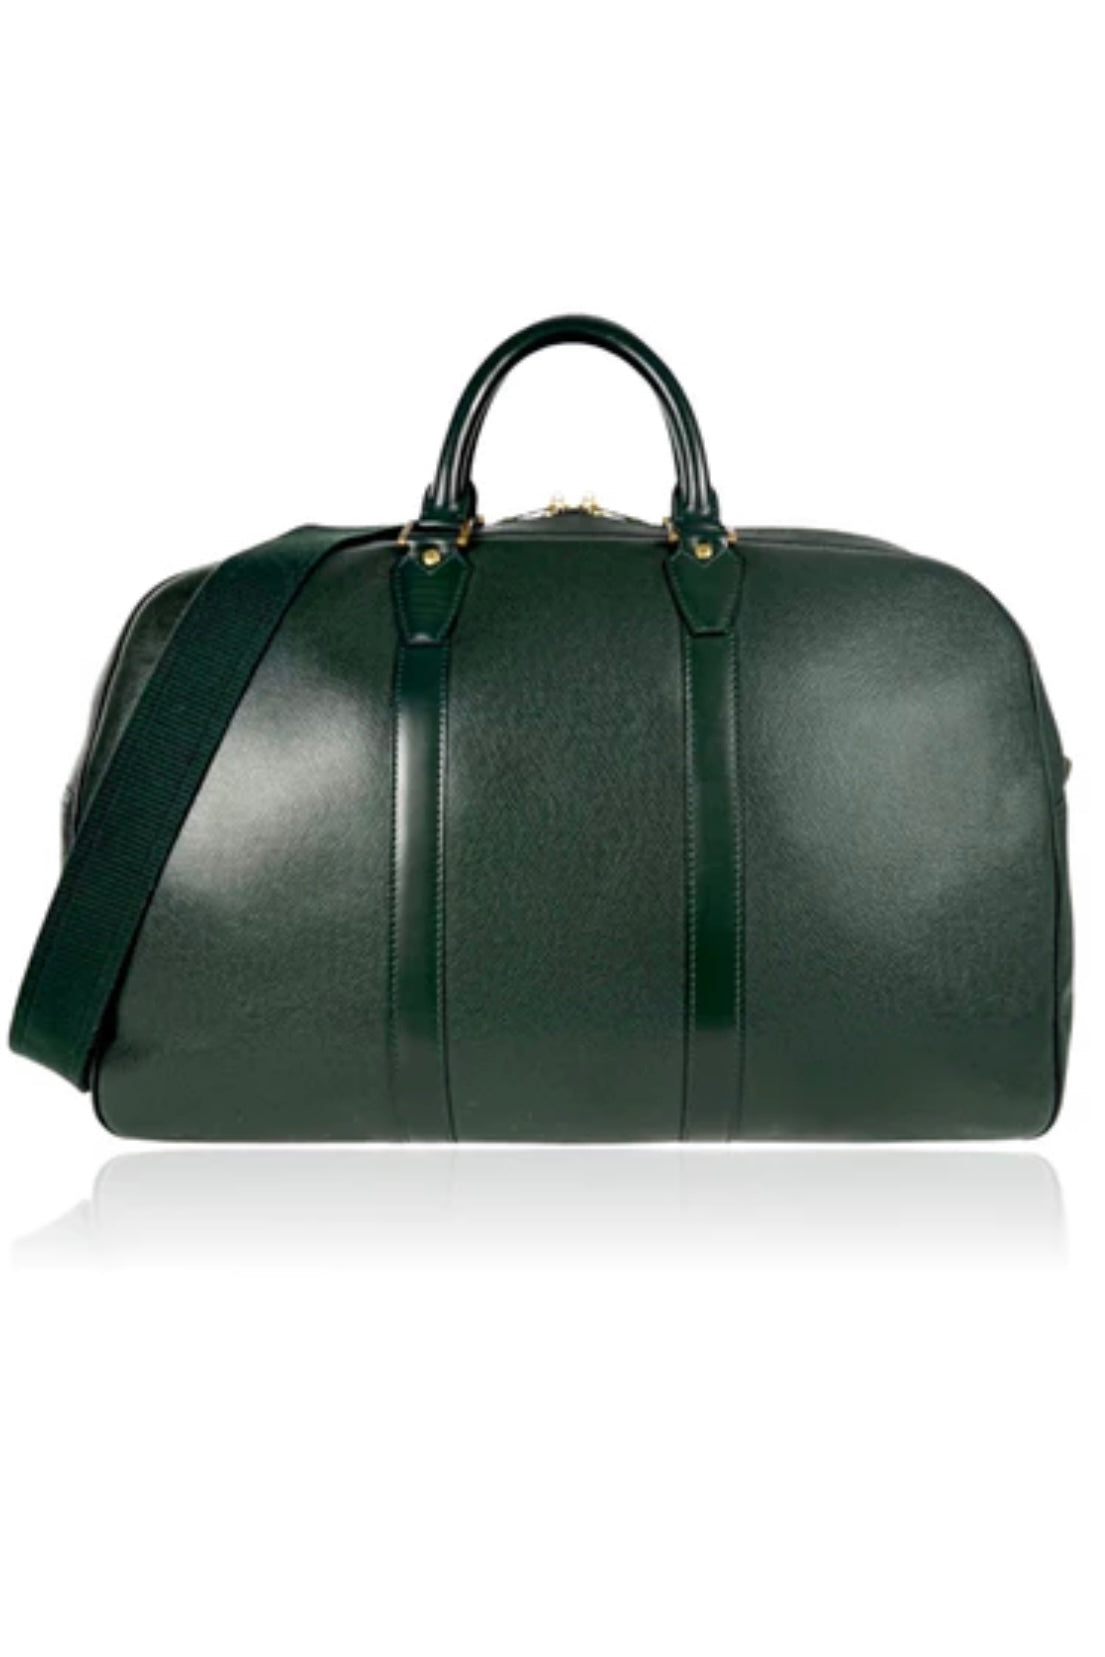 Louis Vuitton Kendall PM Keepall w/strap green Taiga